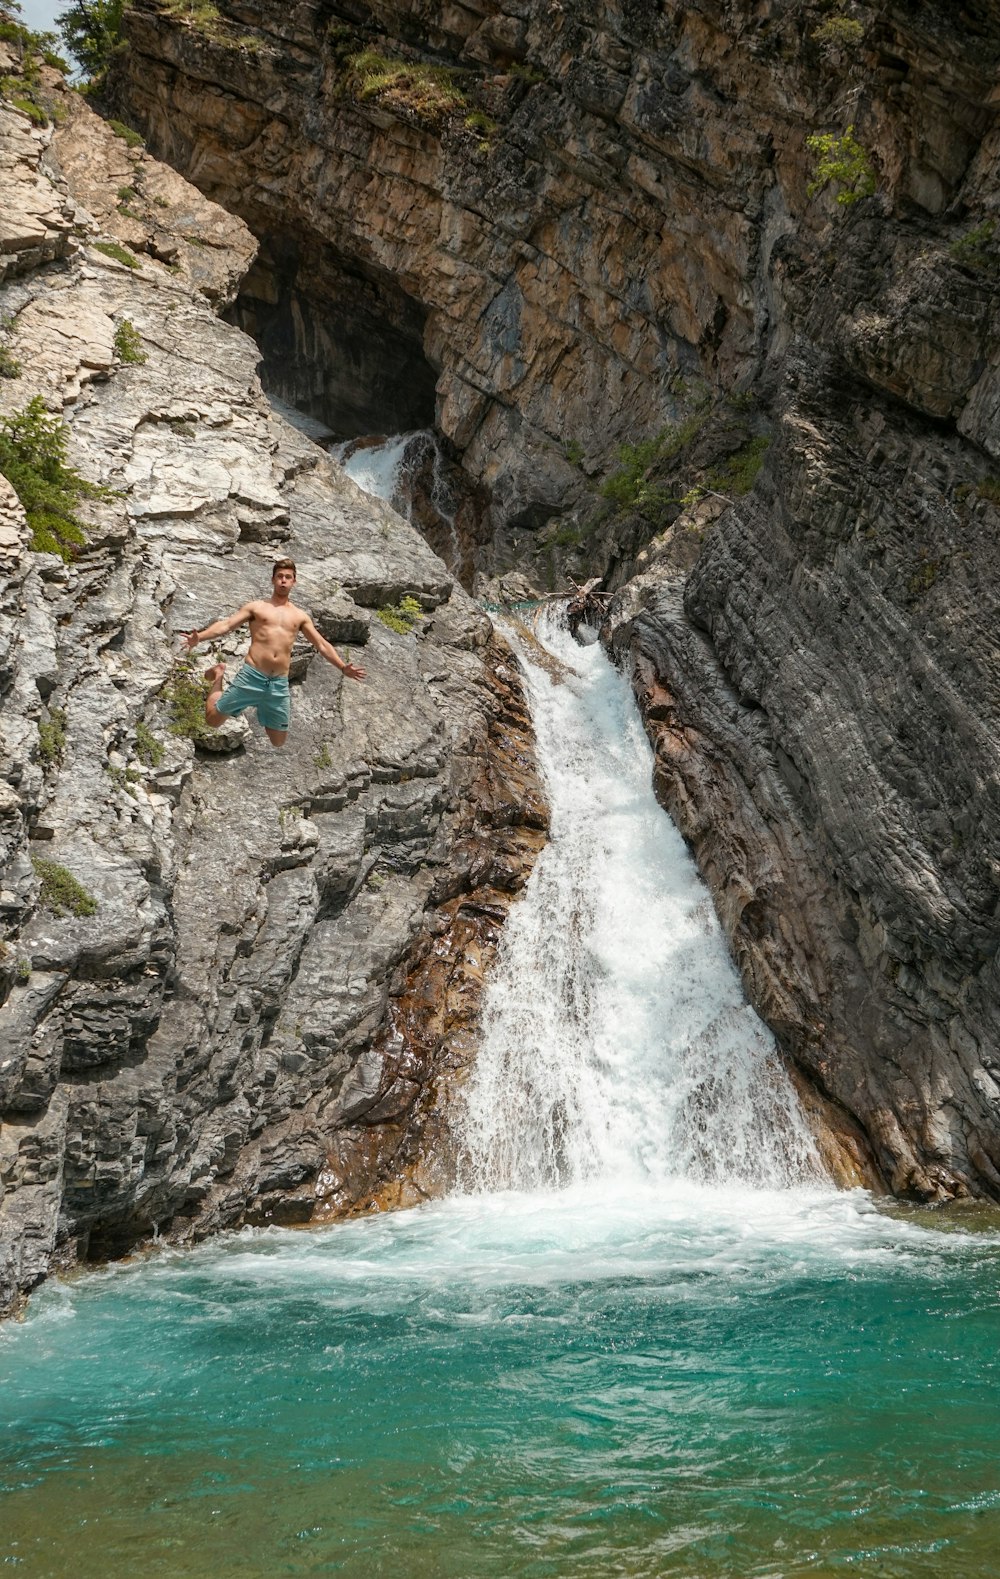 man jumping at body of water